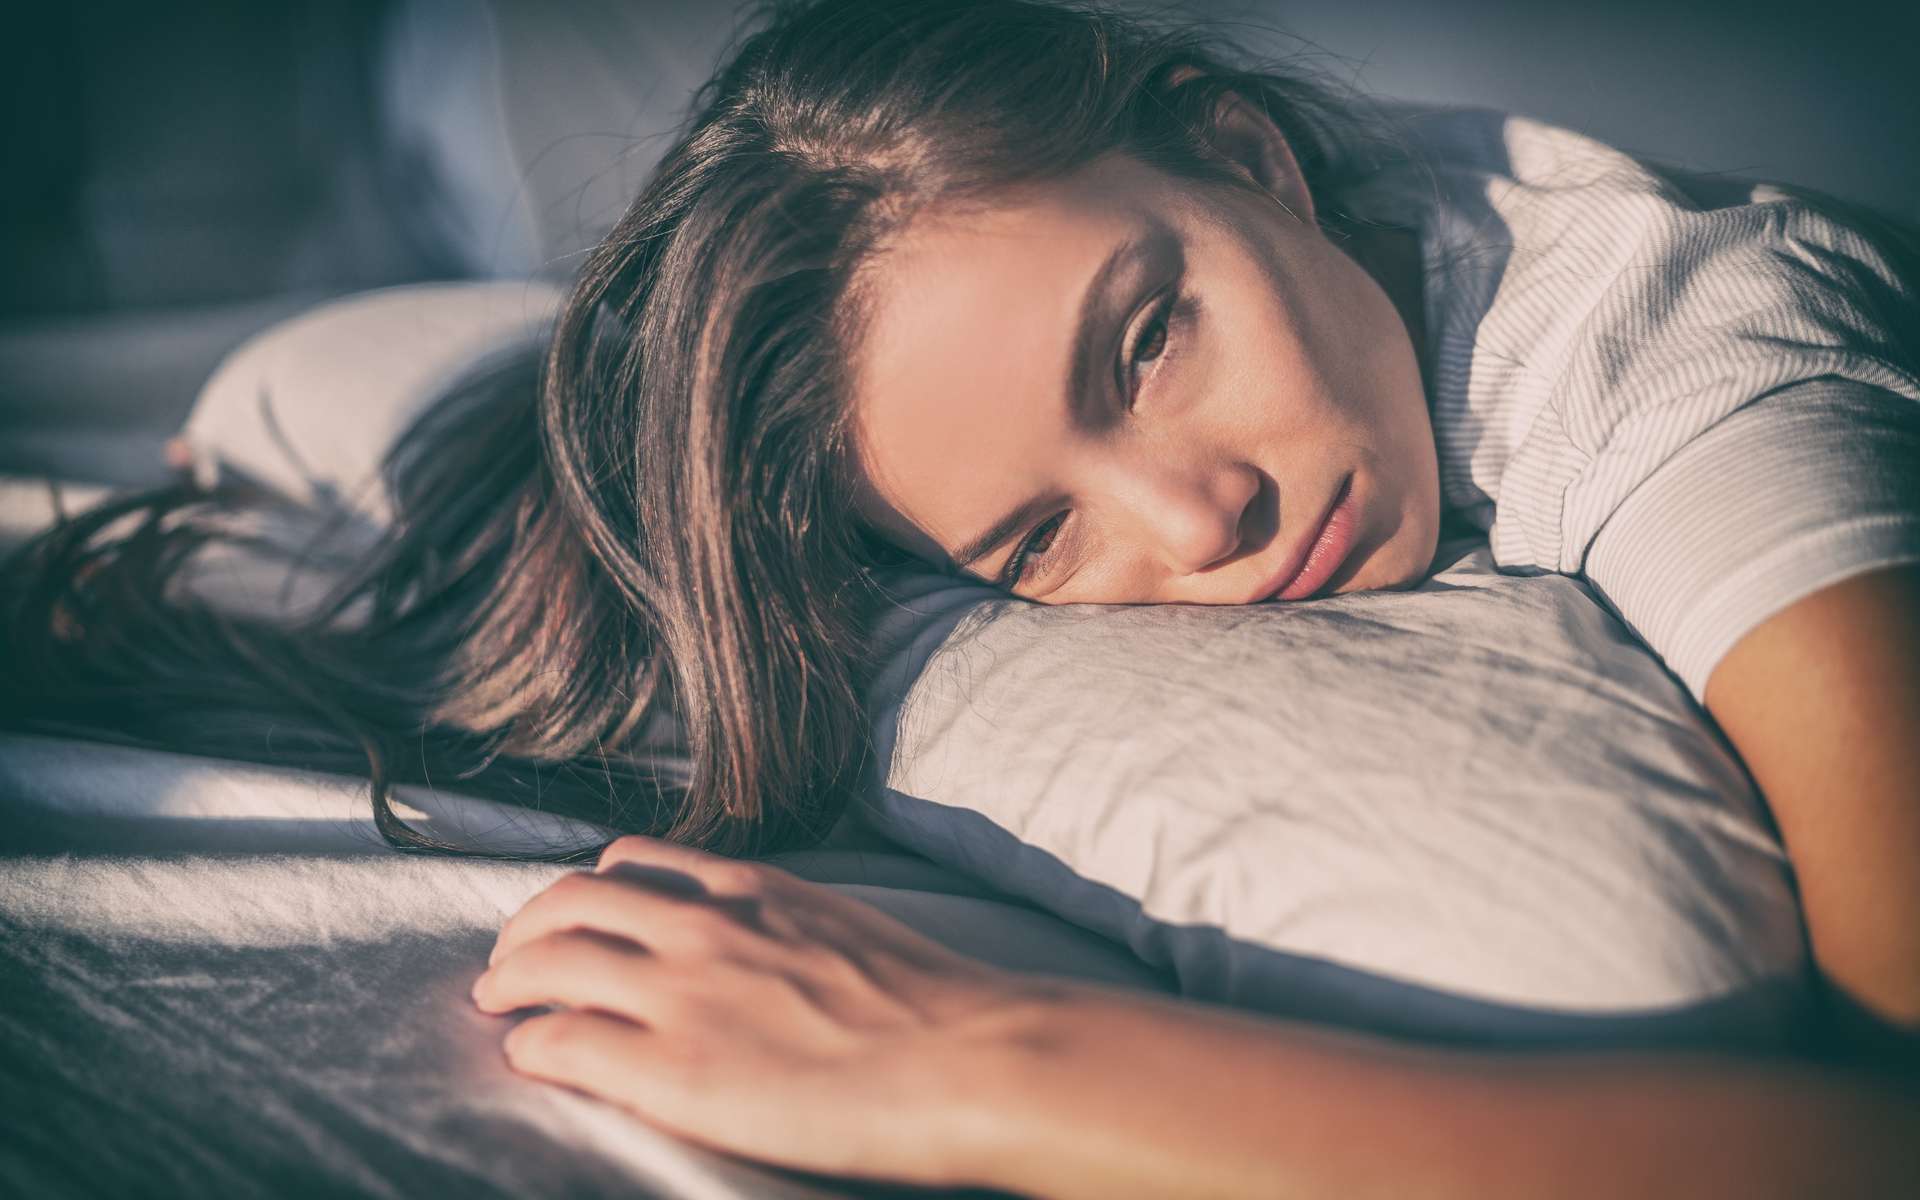 Regarder la télévision plusieurs heures augmente le risque d'apnée du sommeil